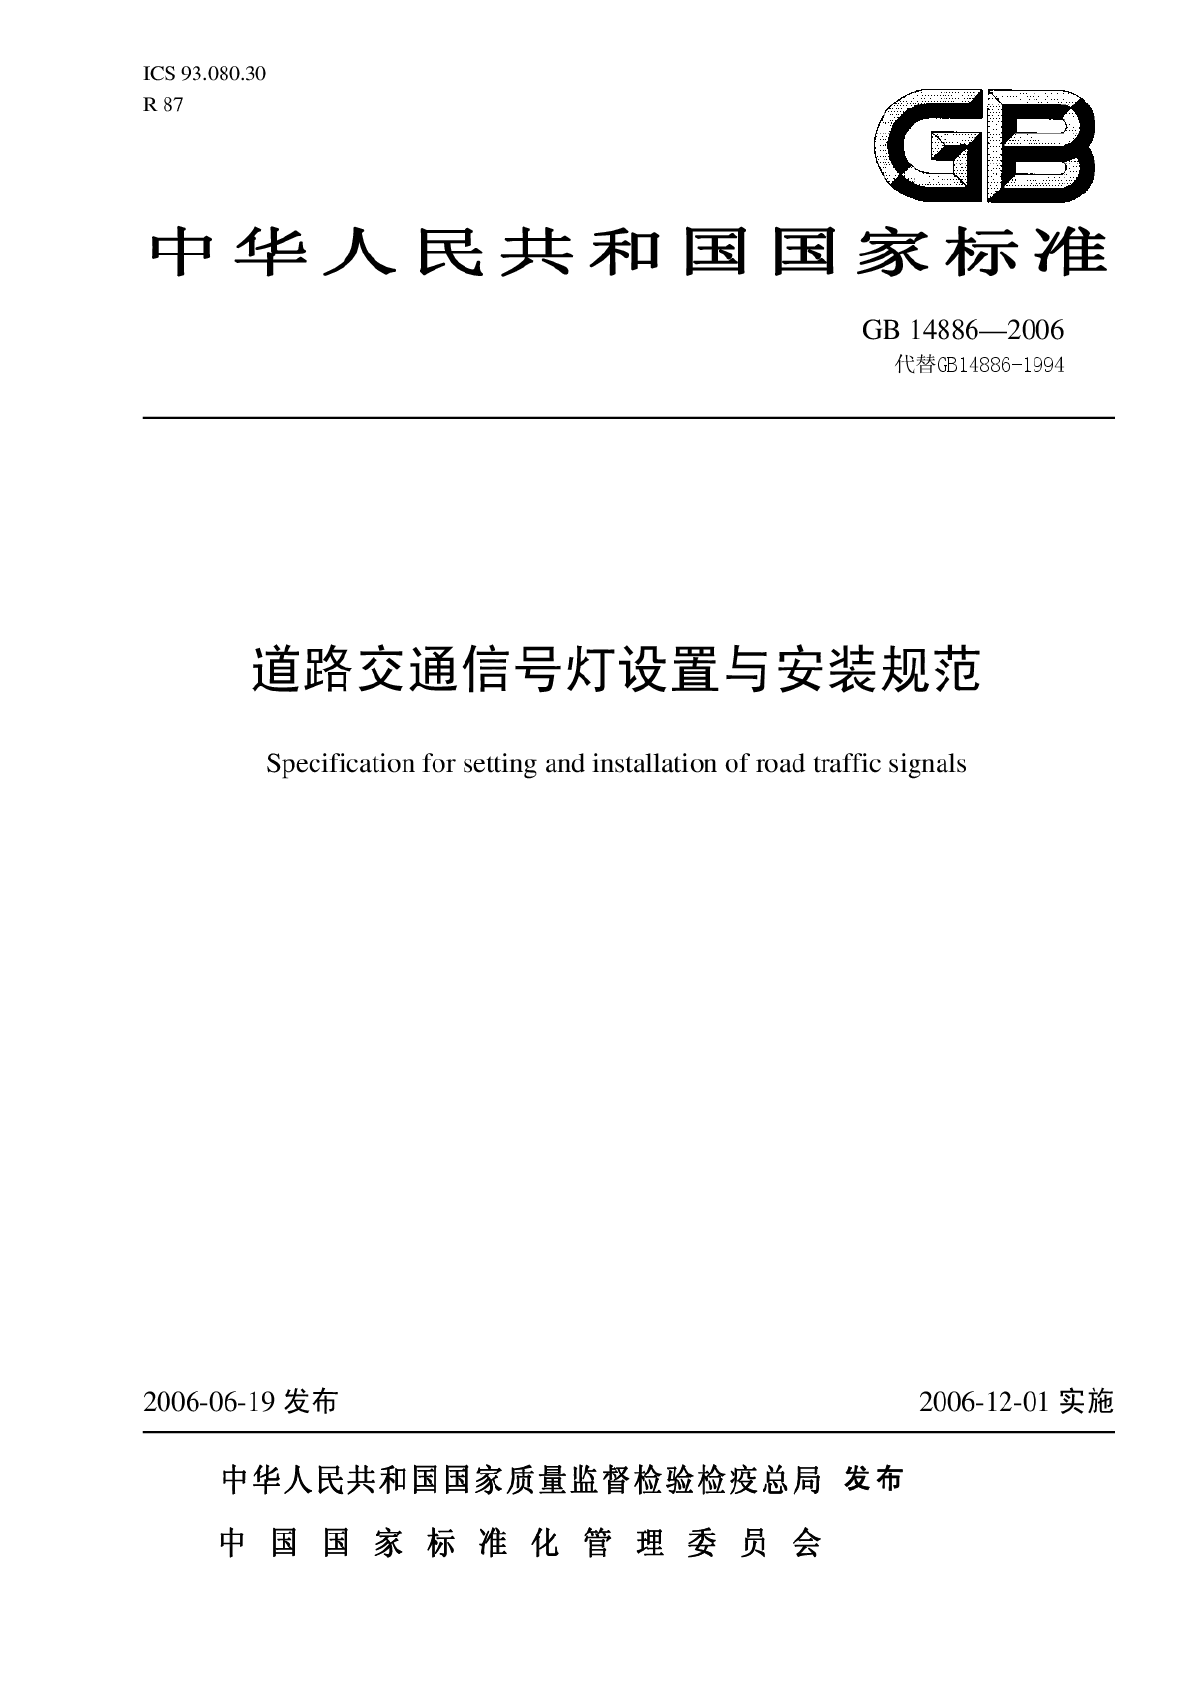 GB 14886—2006中华人民共和国国家标准道路交通信号灯设置与安装规范-图一